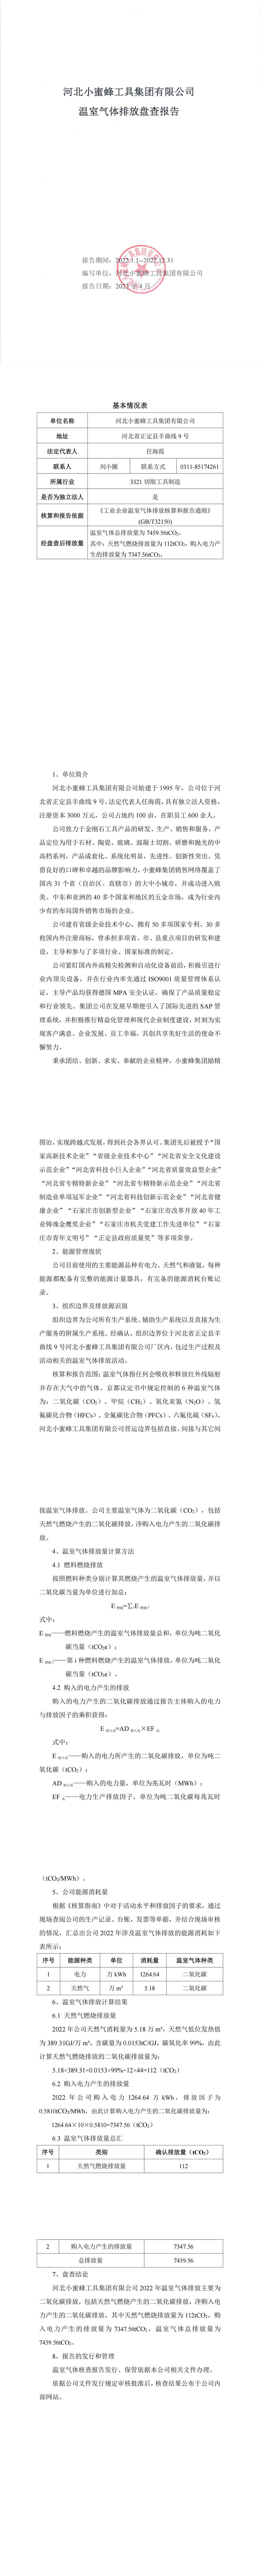 亚盈(中国)官方网站温室气体核查报告_00.jpg